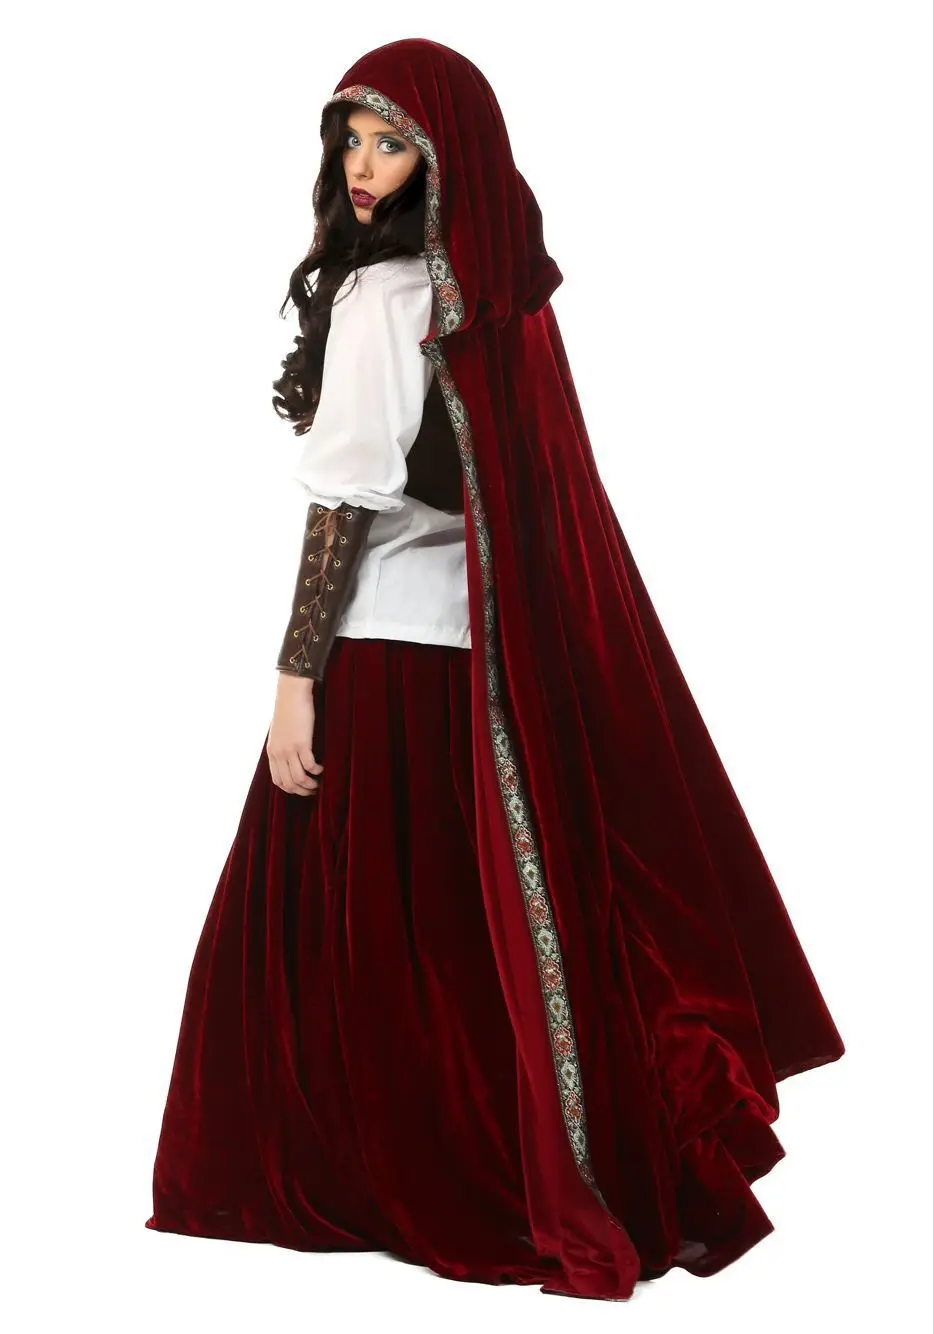 Хорошее качество Fantasia «Красная Шапочка» костюм Делюкс Хэллоуин наряд для вечеринки из Сторибрука по сказка Косплэй нарядное платье